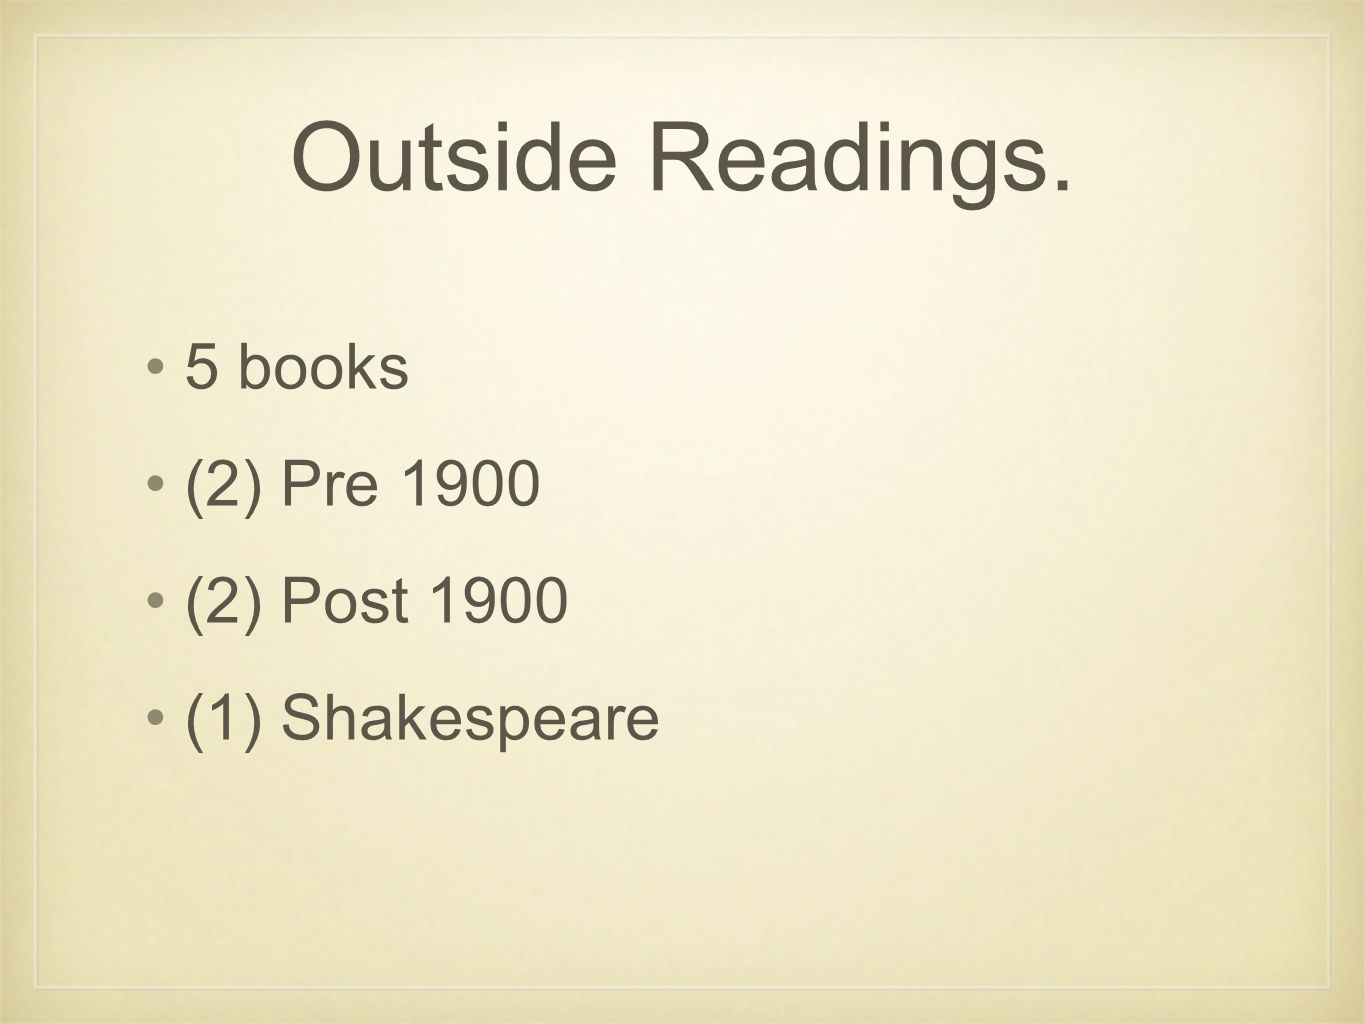 Outside Readings. 5 books (2) Pre 1900 (2) Post 1900 (1) Shakespeare